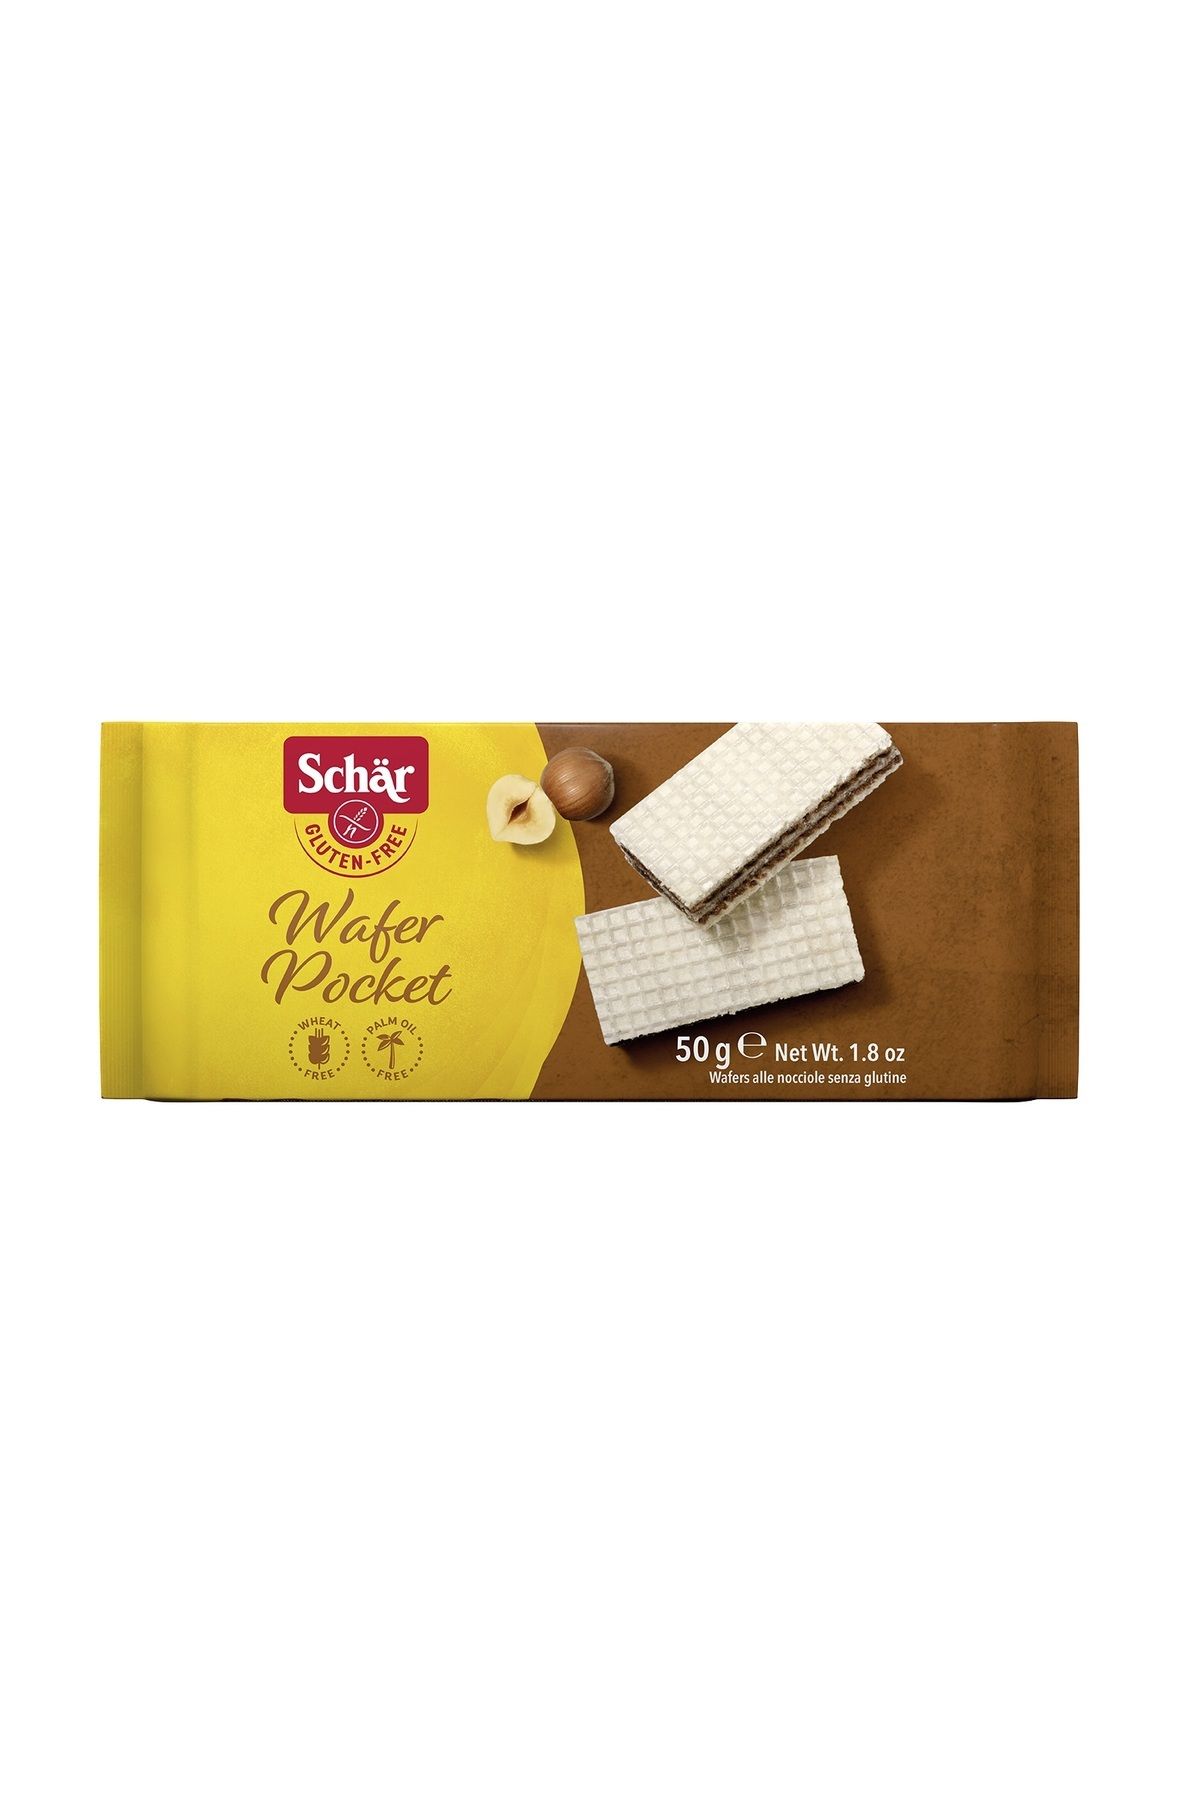 Schar Wafer Pocket Fındıklı Glutensiz Gofret 50 gr (10 ADET)